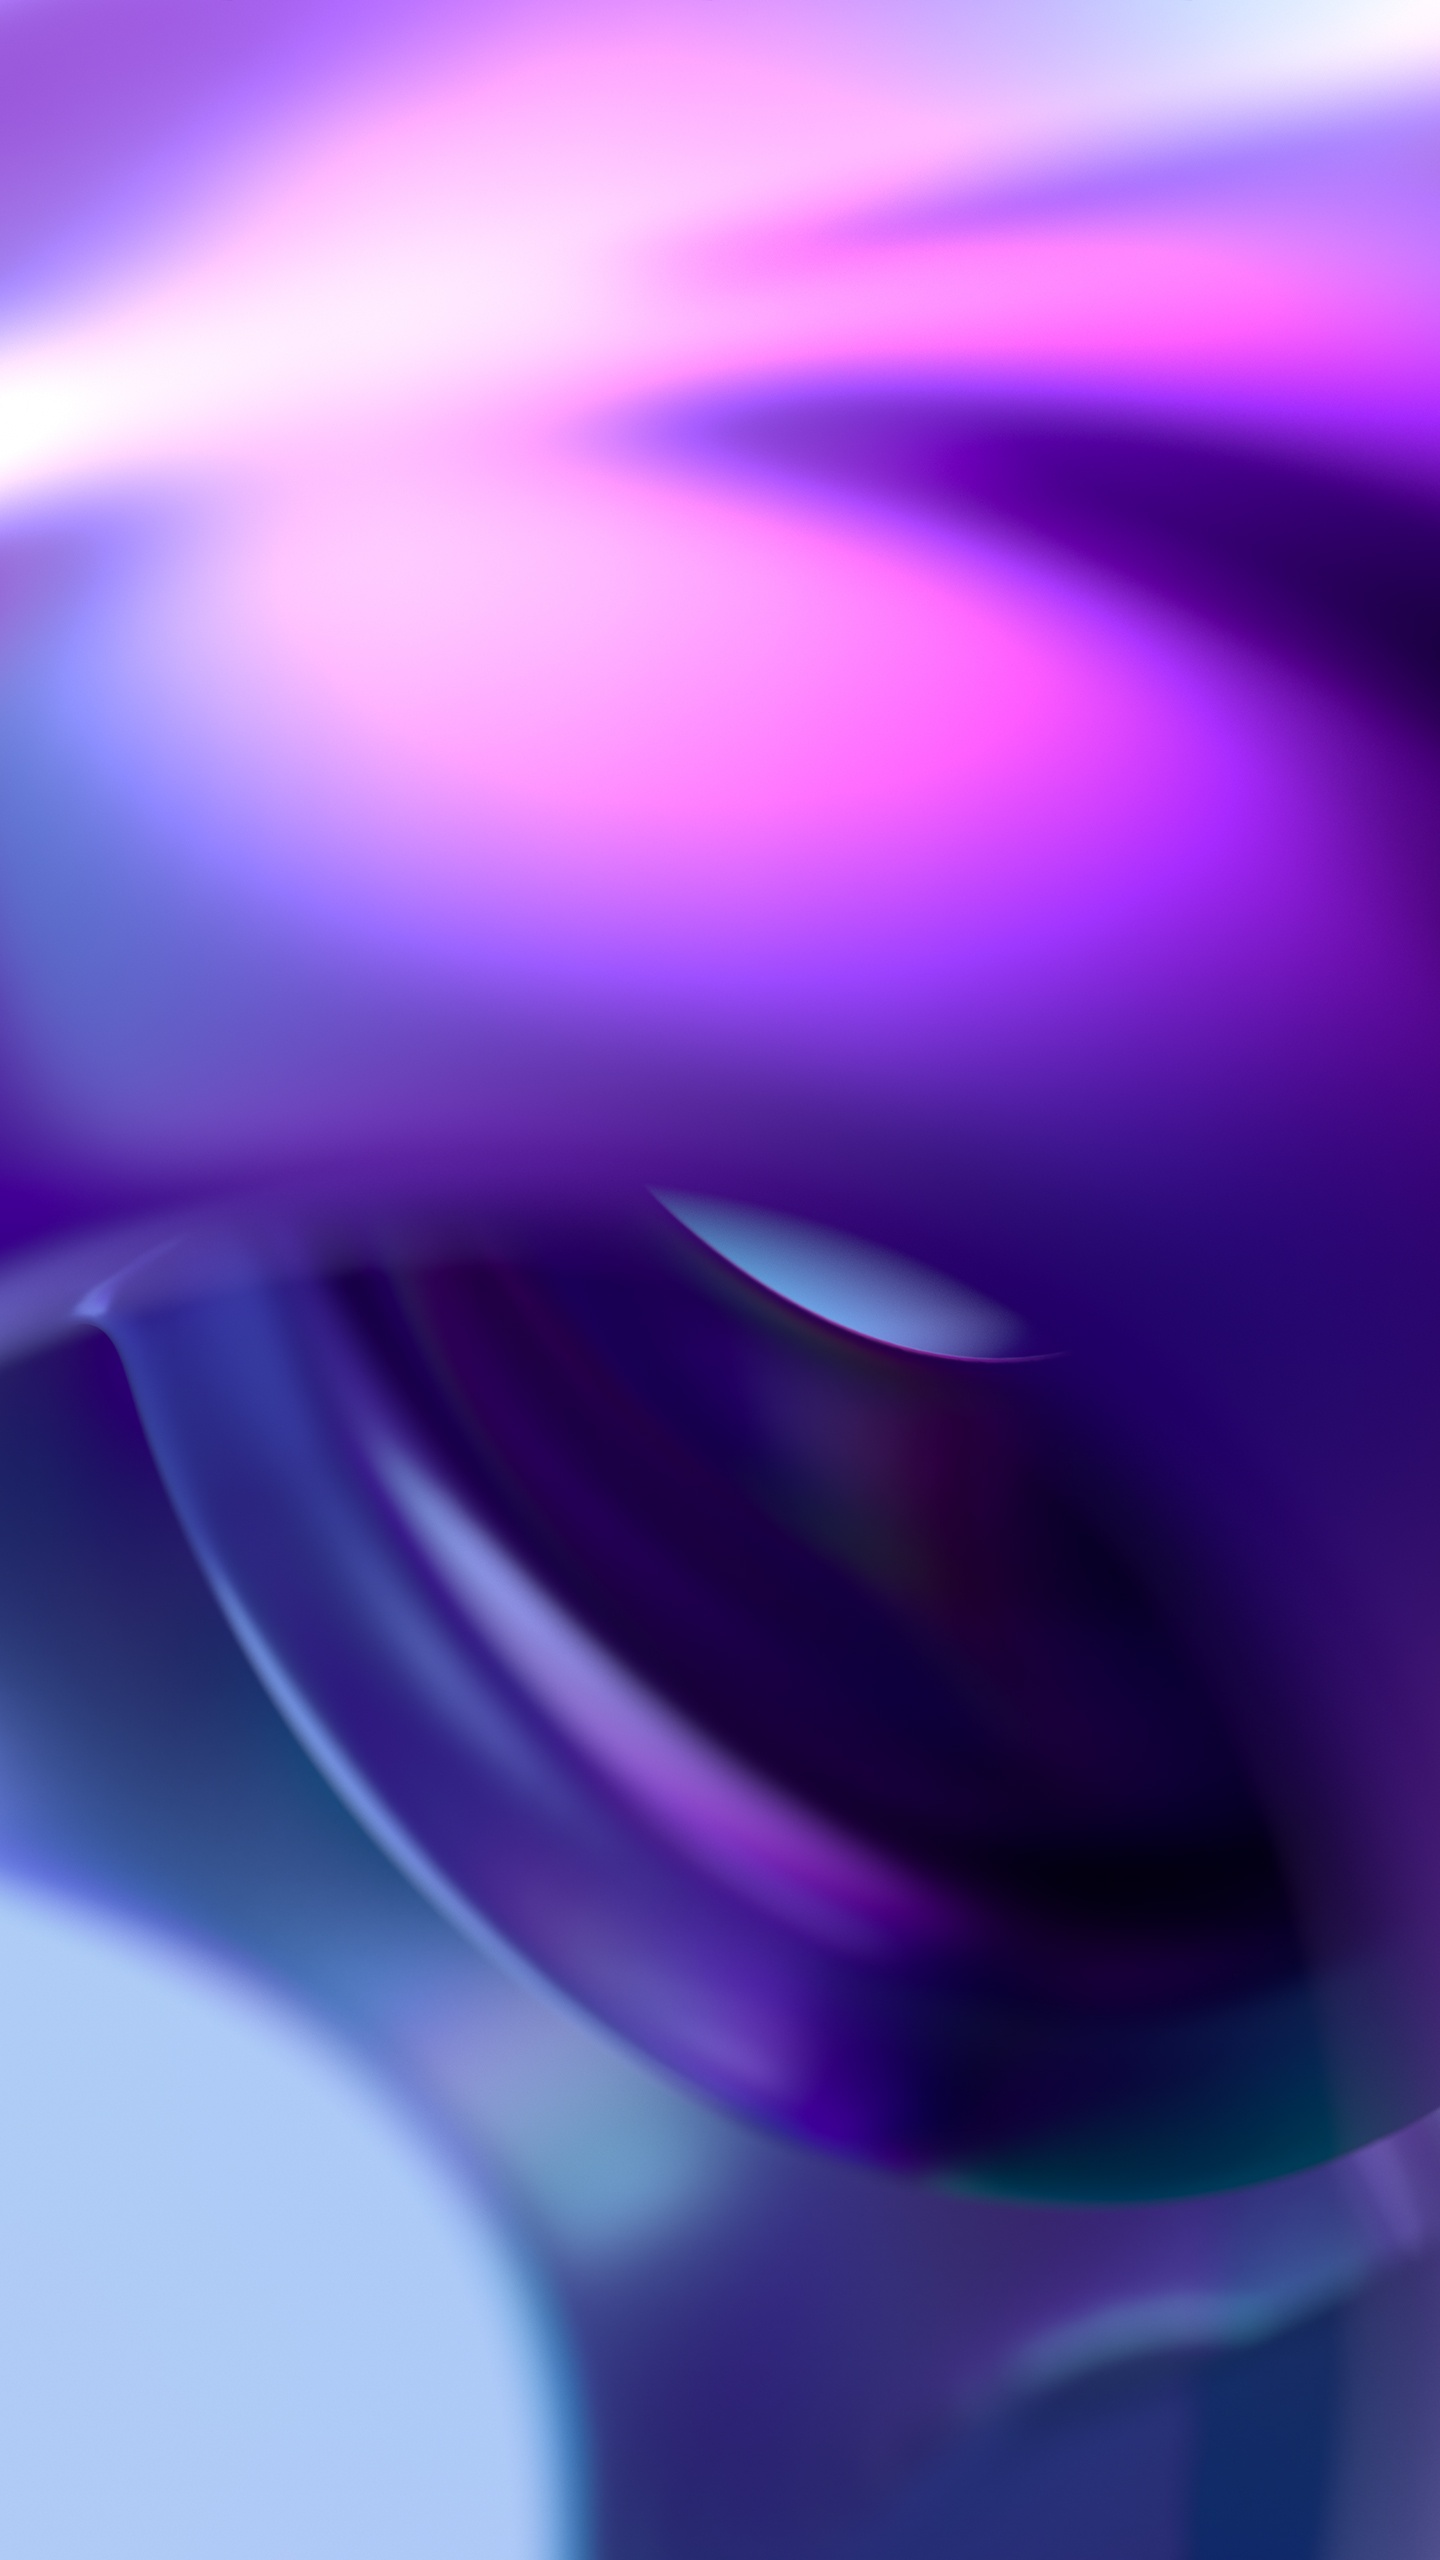 3D Purple background: Hãy xem hình ảnh với nền tím 3D để thỏa mãn khát khao ngắm nhin những không gian tuyệt đẹp với hiệu ứng tuyệt vời nhất. Bức hình mang đến cho bạn sự trang nhã và điệu đà với những chi tiết tinh tế và đặc biệt.